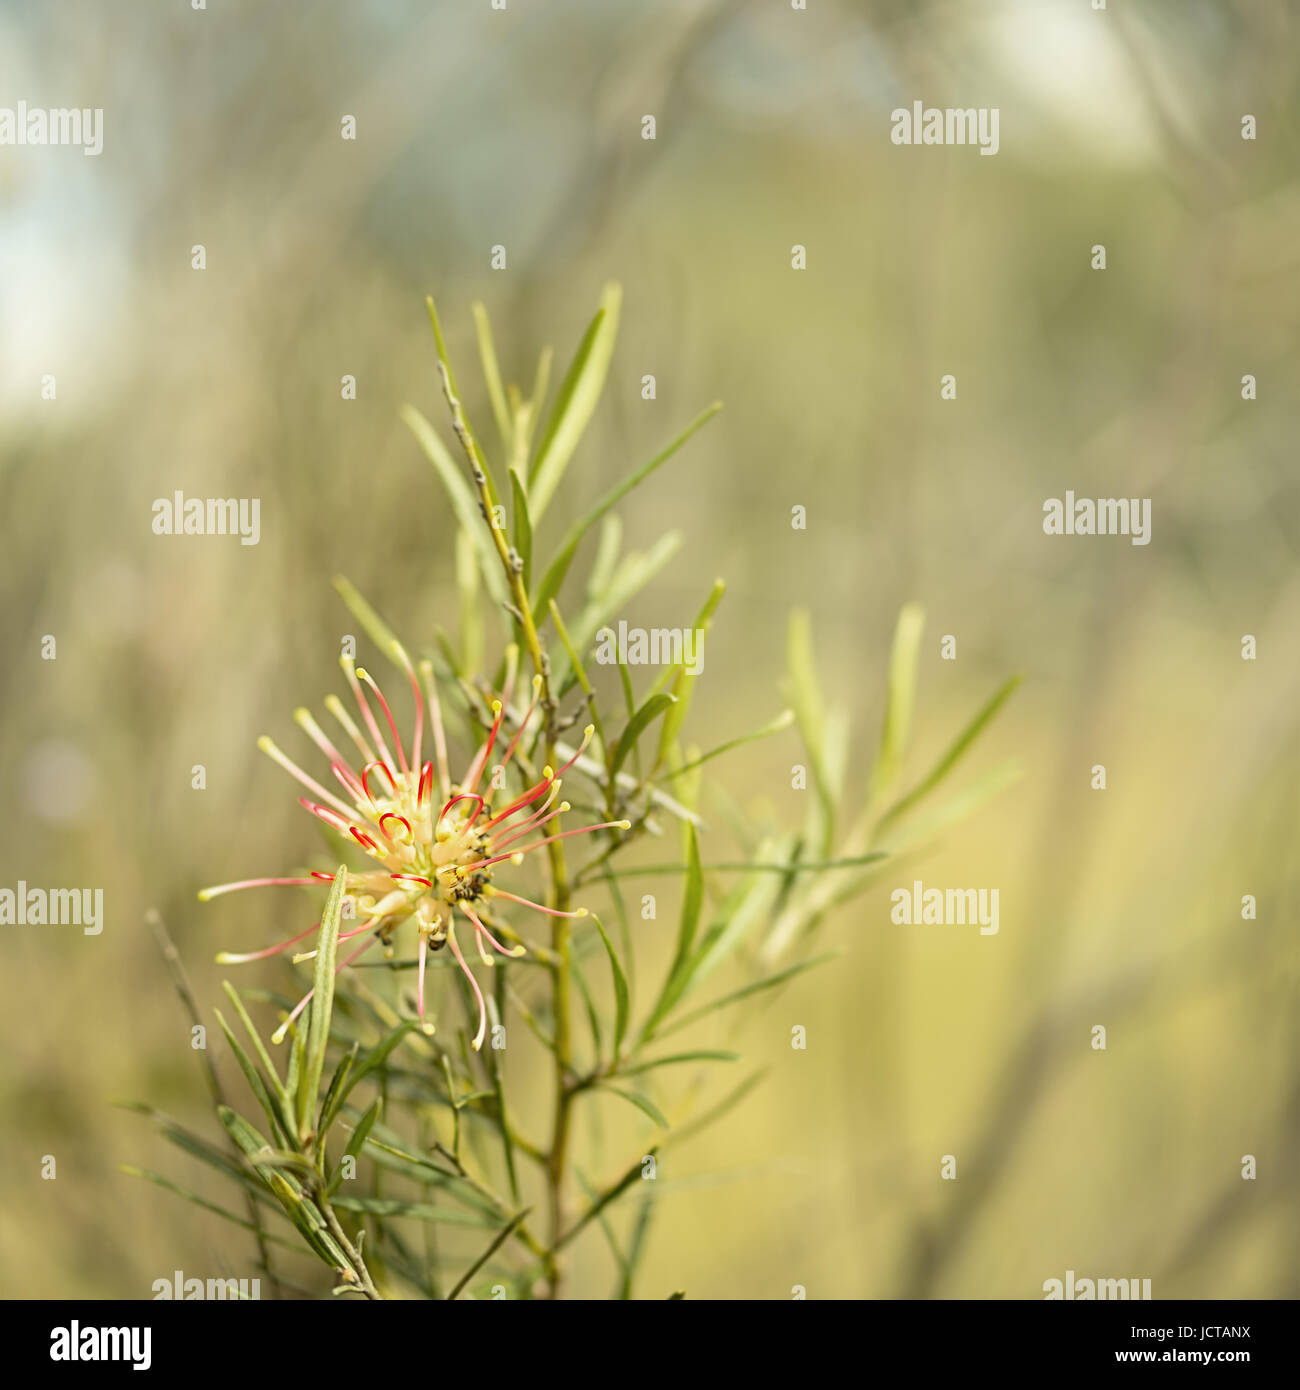 Quadratisches Bild der Australian native Grevillea Flora Maurer Spinne Blume Blüte im winter Stockfoto